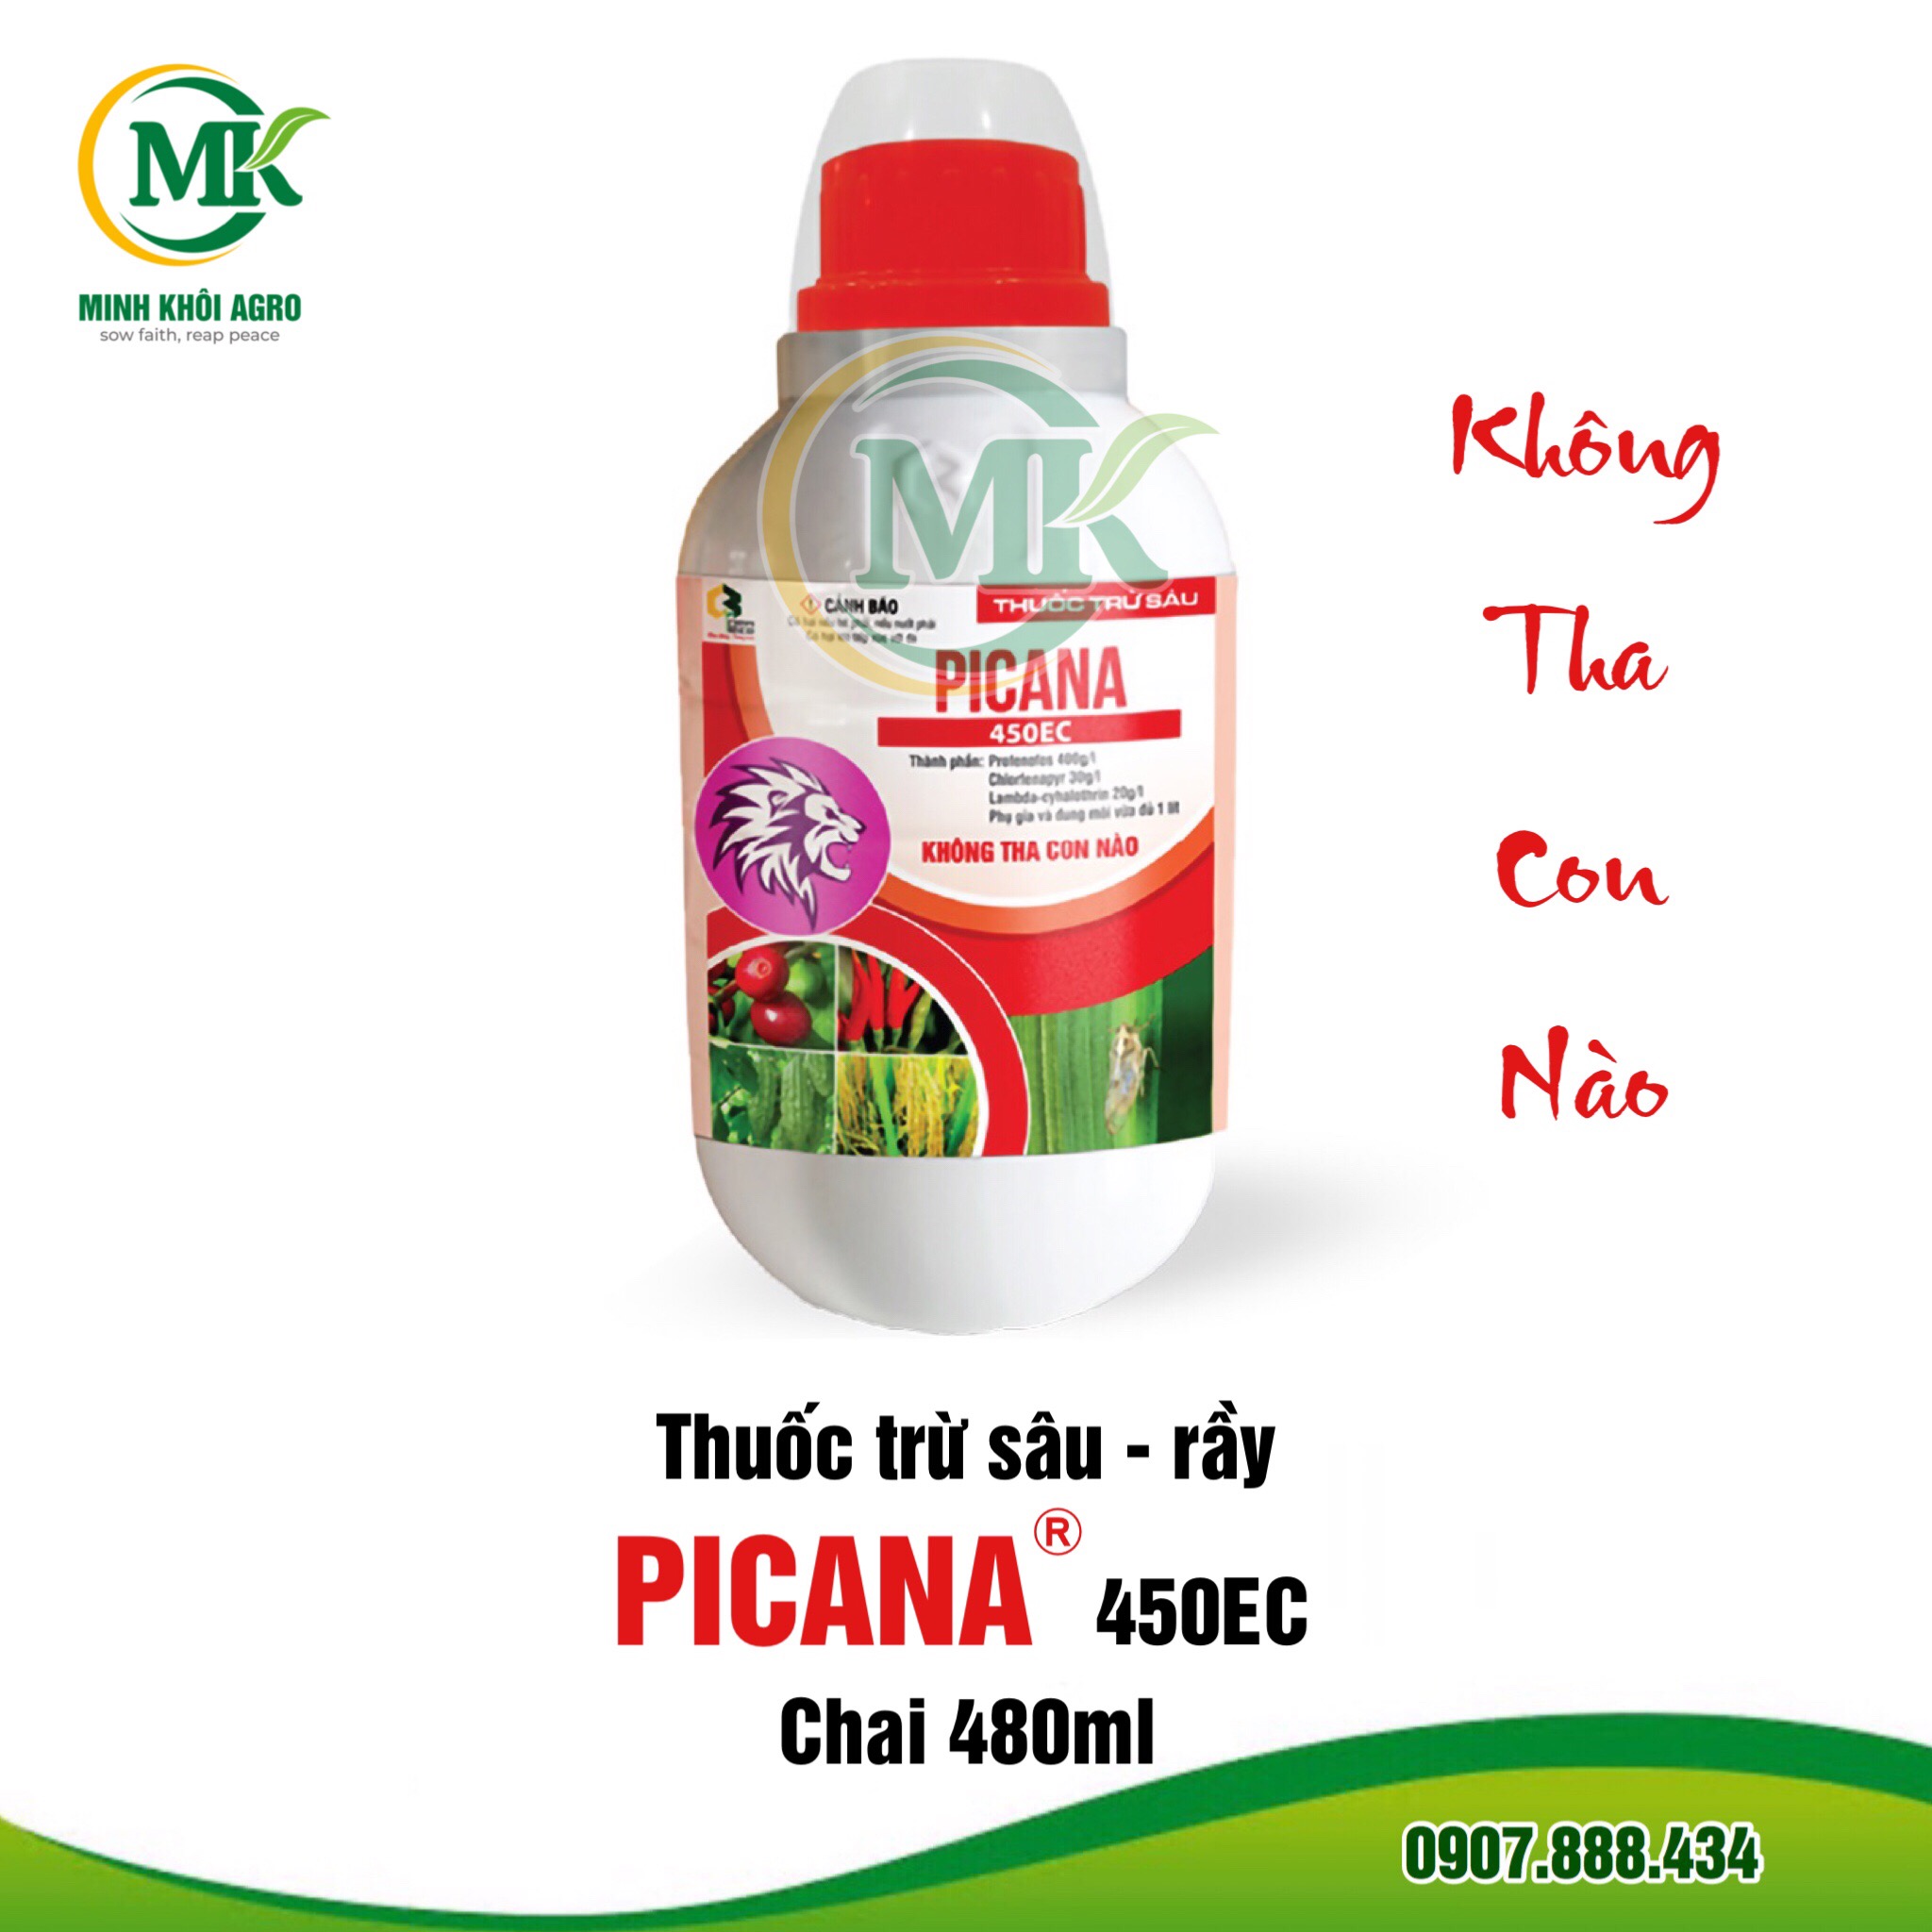 Thuốc trừ sâu Picana 450EC - Chai 480ml